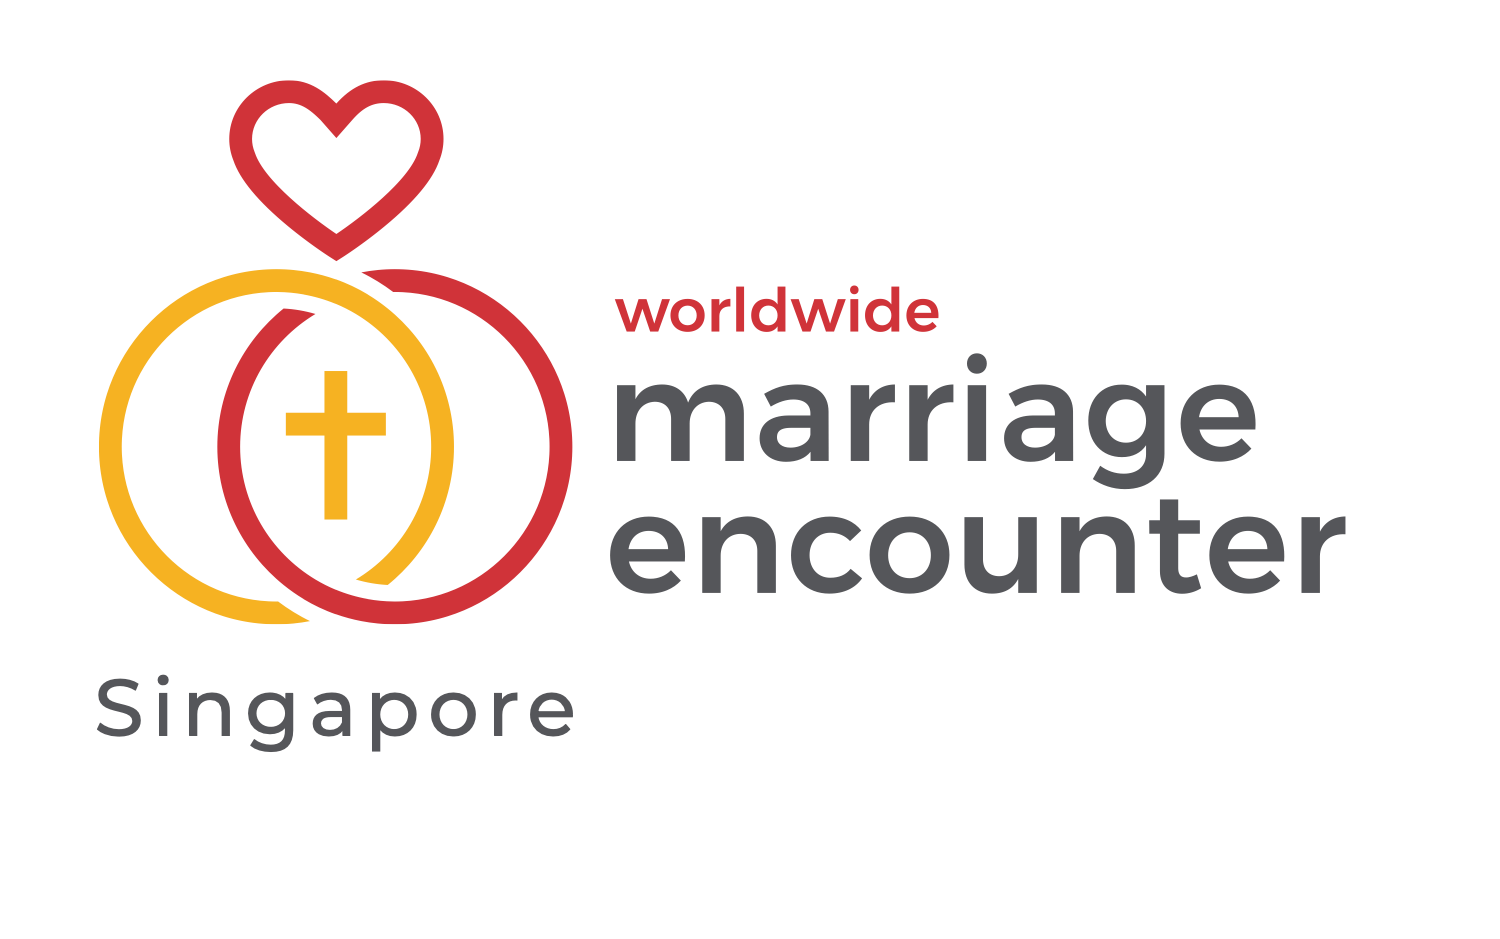 event-calendar-world-wide-marriage-encounter-singapore